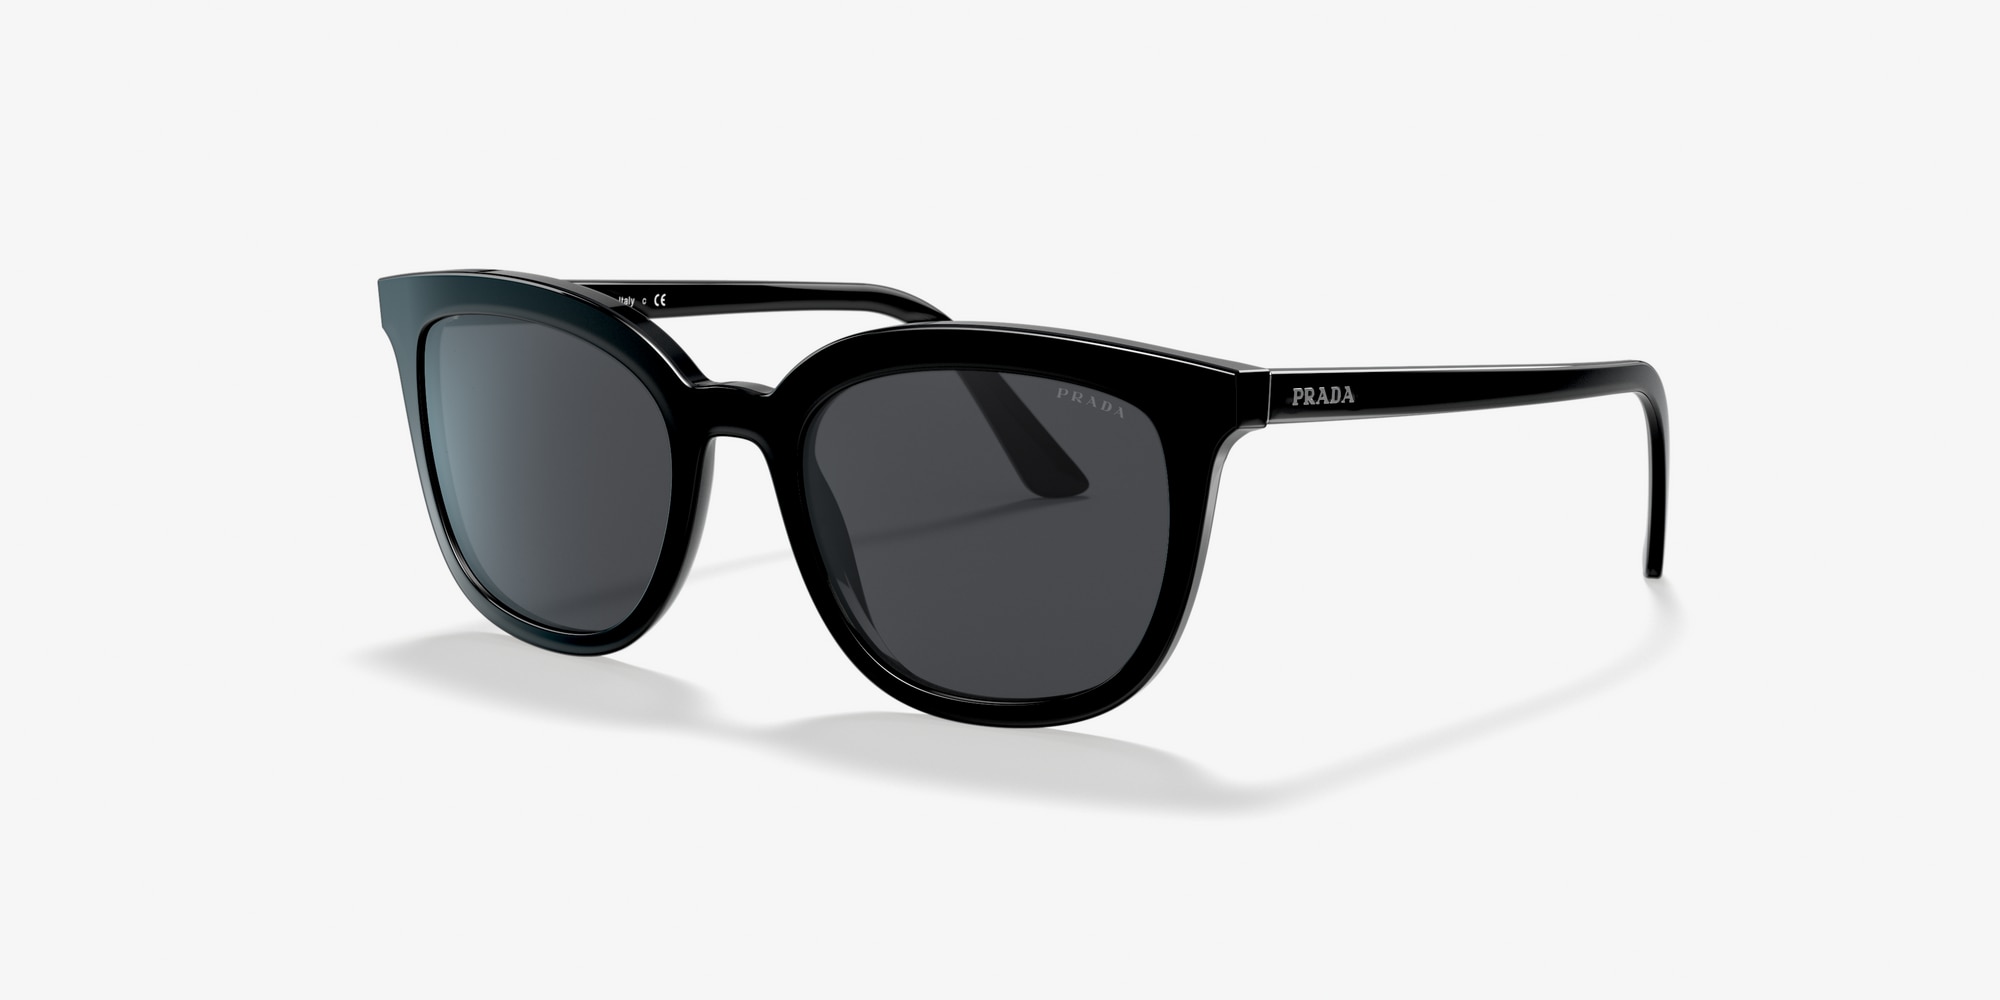 prada black sunglasses